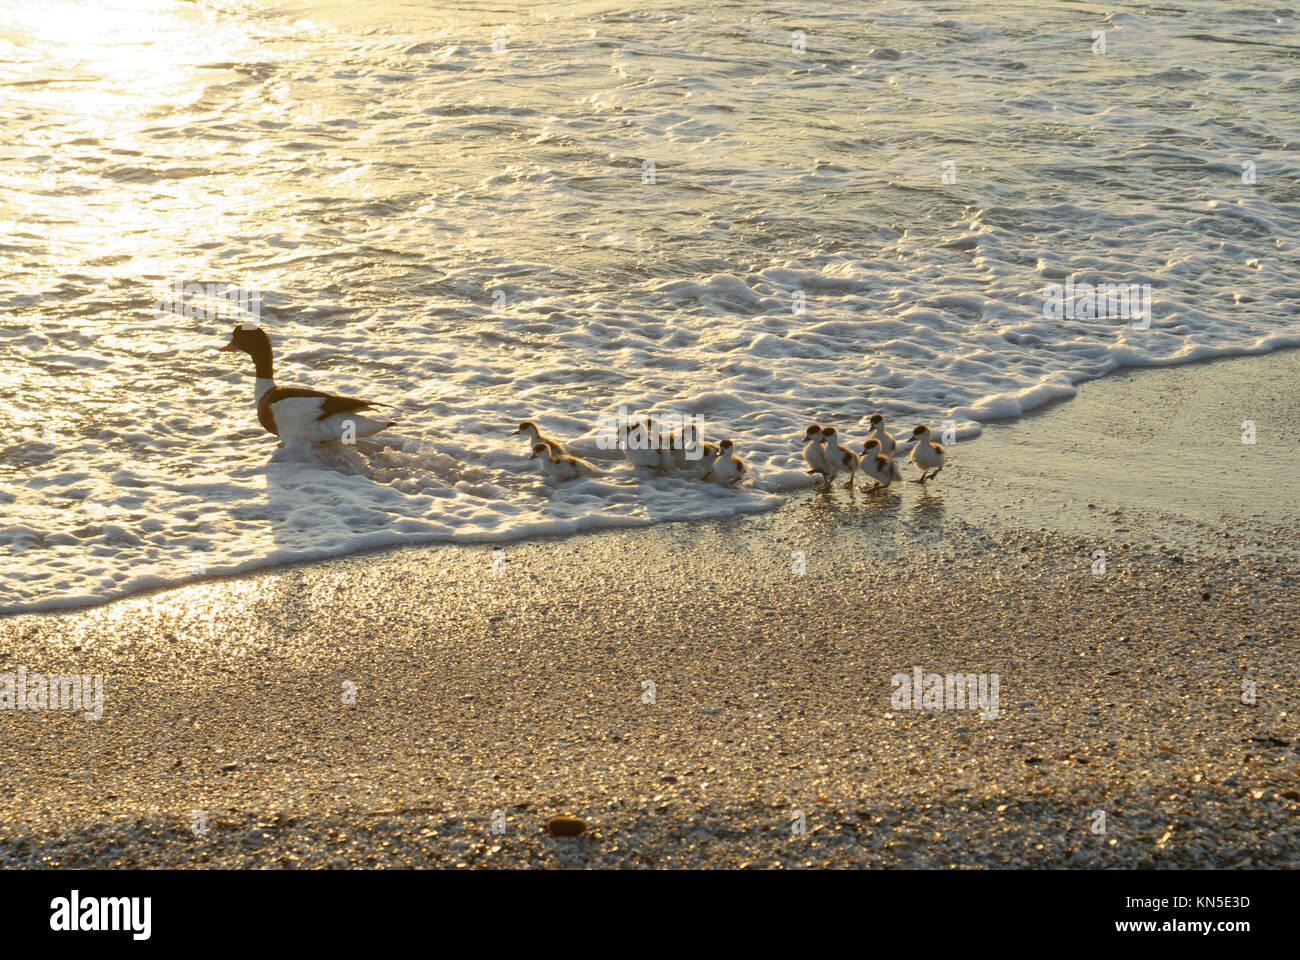 Les jeunes canards suivant leur mère pour leur première leçon de natation Banque D'Images